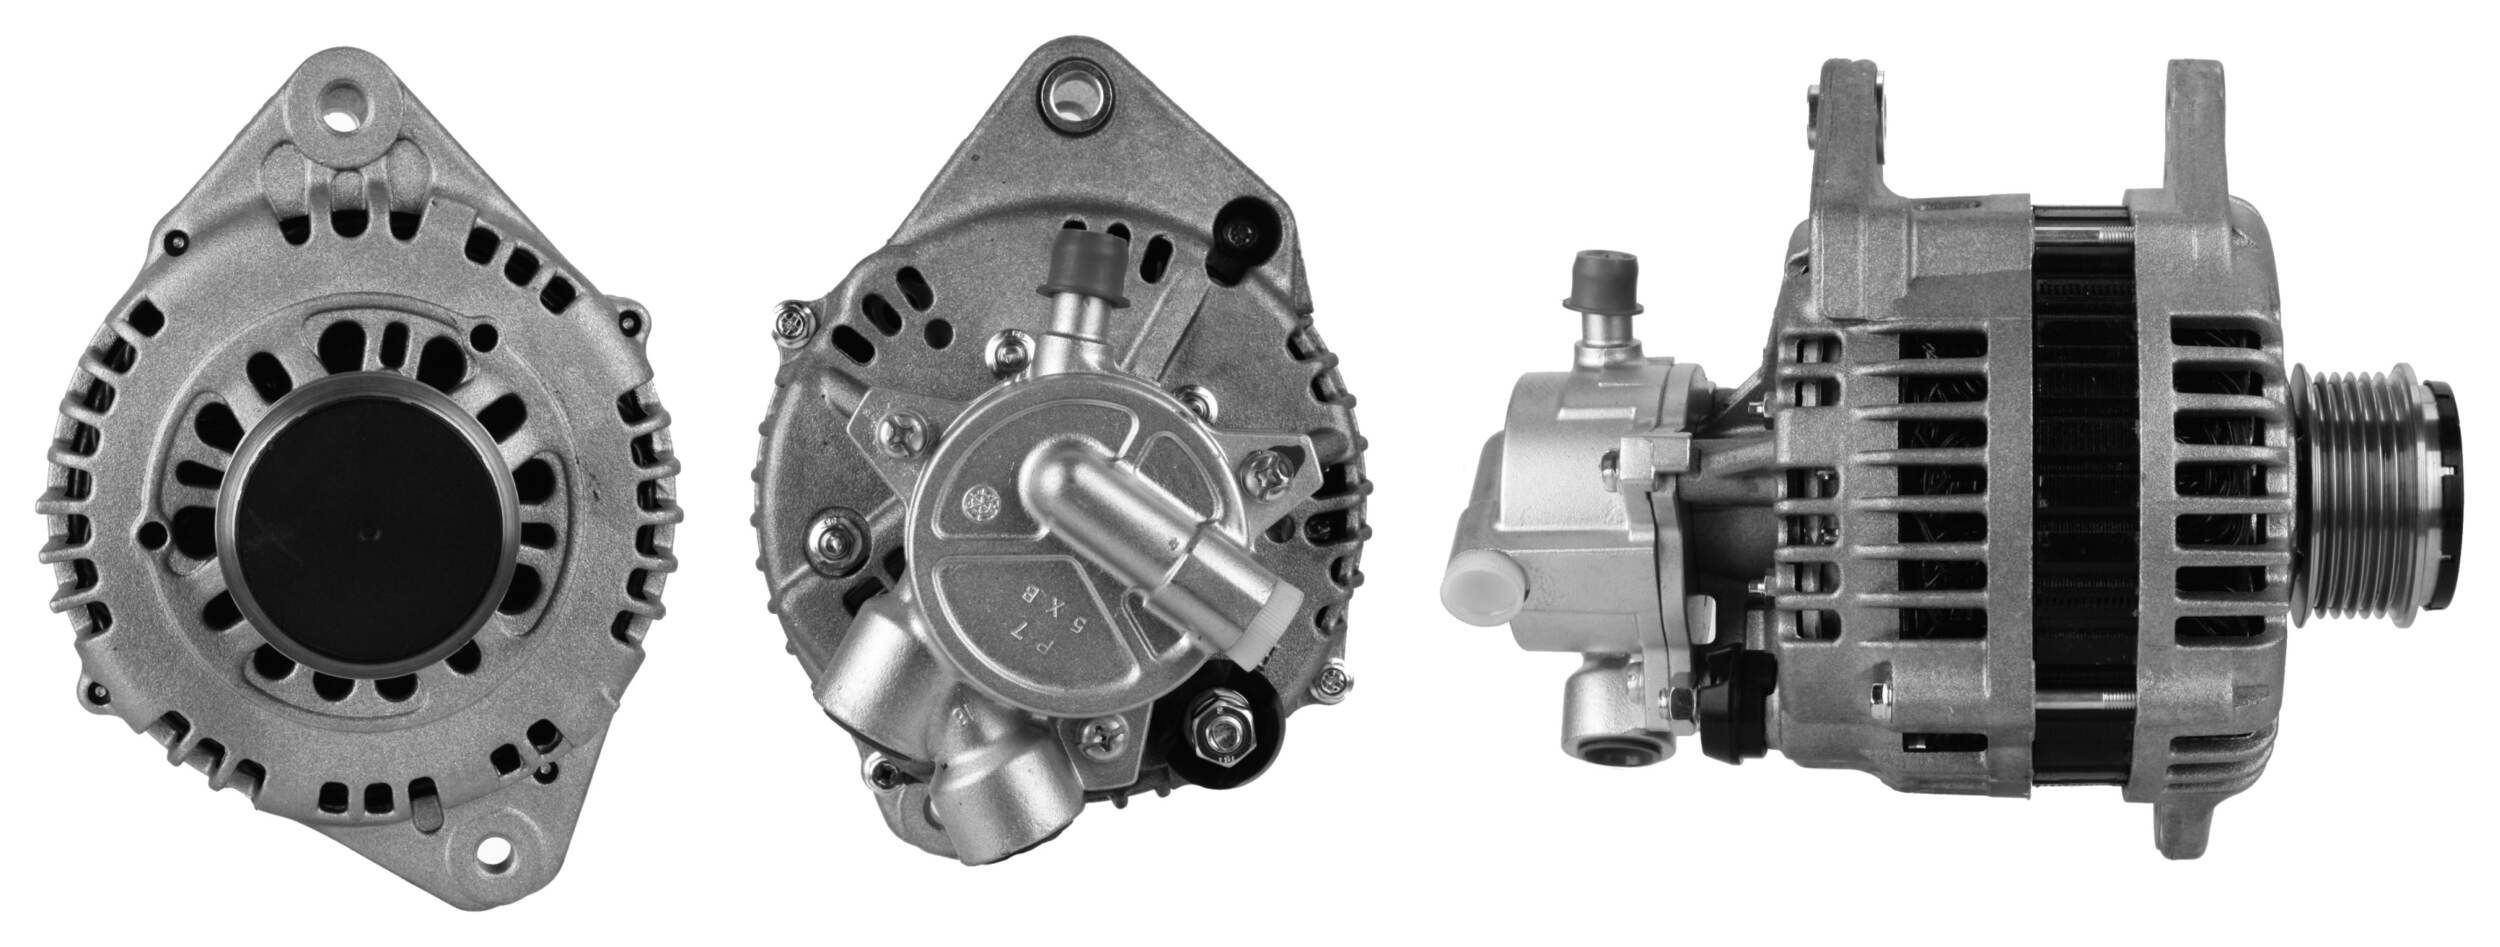 ELSTOCK 28-5739 Alternator 14V, 110A, M8, L-F, 0111, incl. vacuum pump, Ø 60 mm